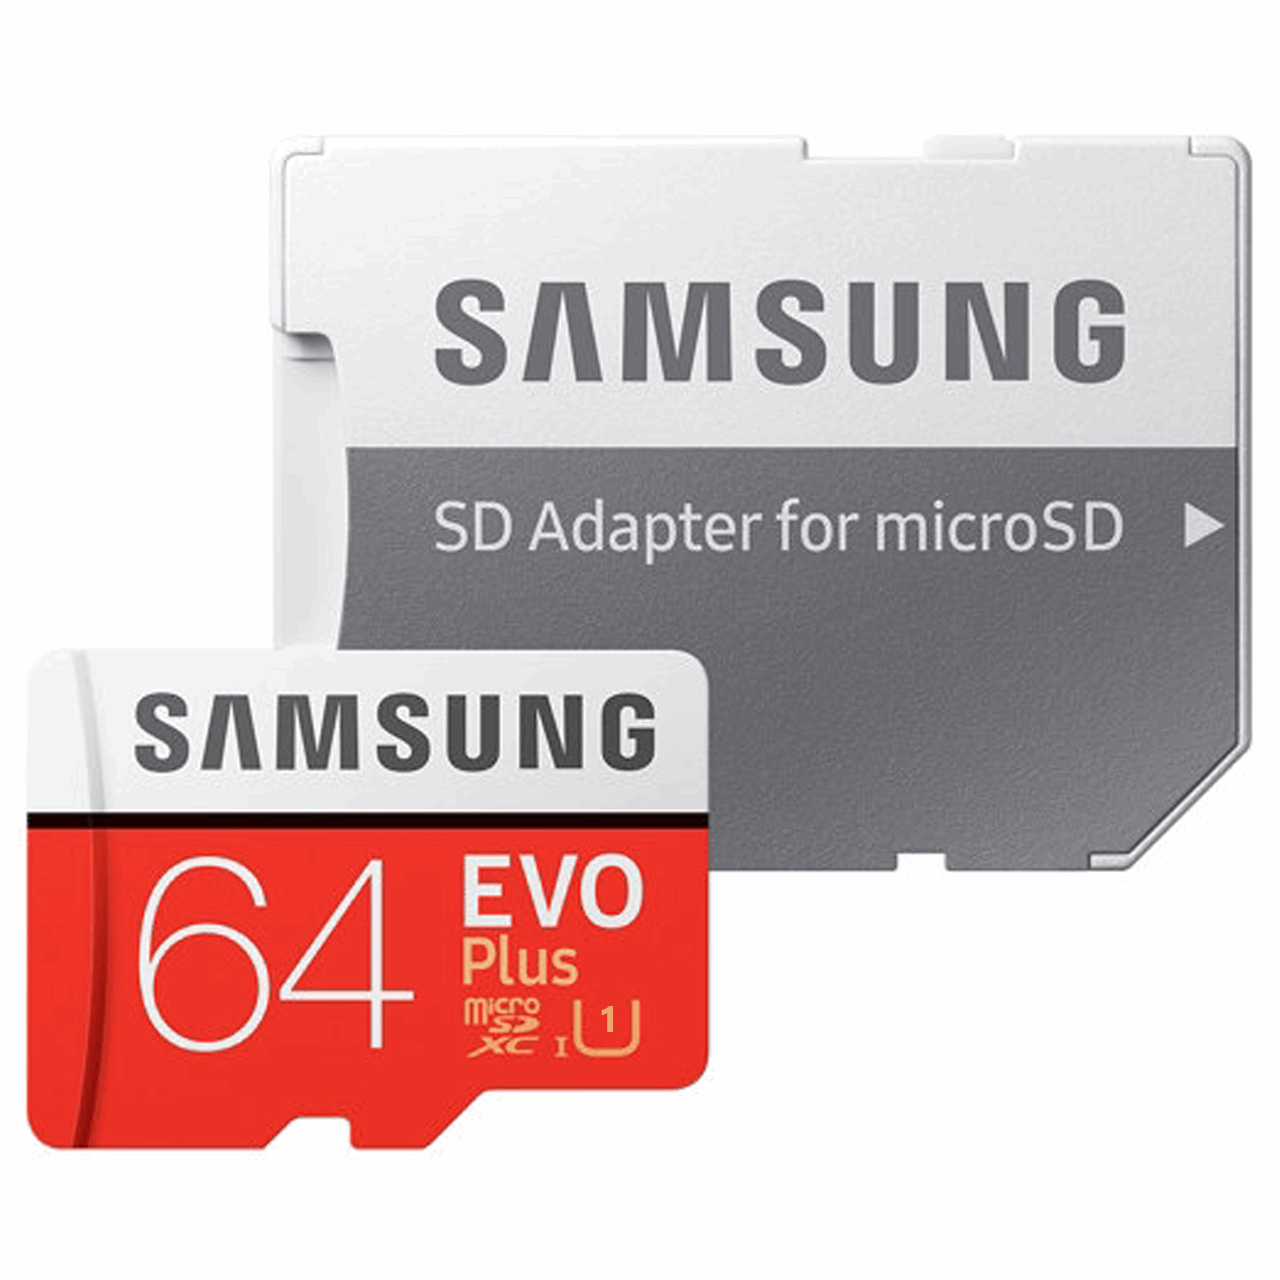 کارت حافظه microSDXC مدل Evo Plus کلاس 10 استاندارد UHS-I U1 سرعت 80MBps همراه با آداپتور SD ظرفیت 64 گیگابایت